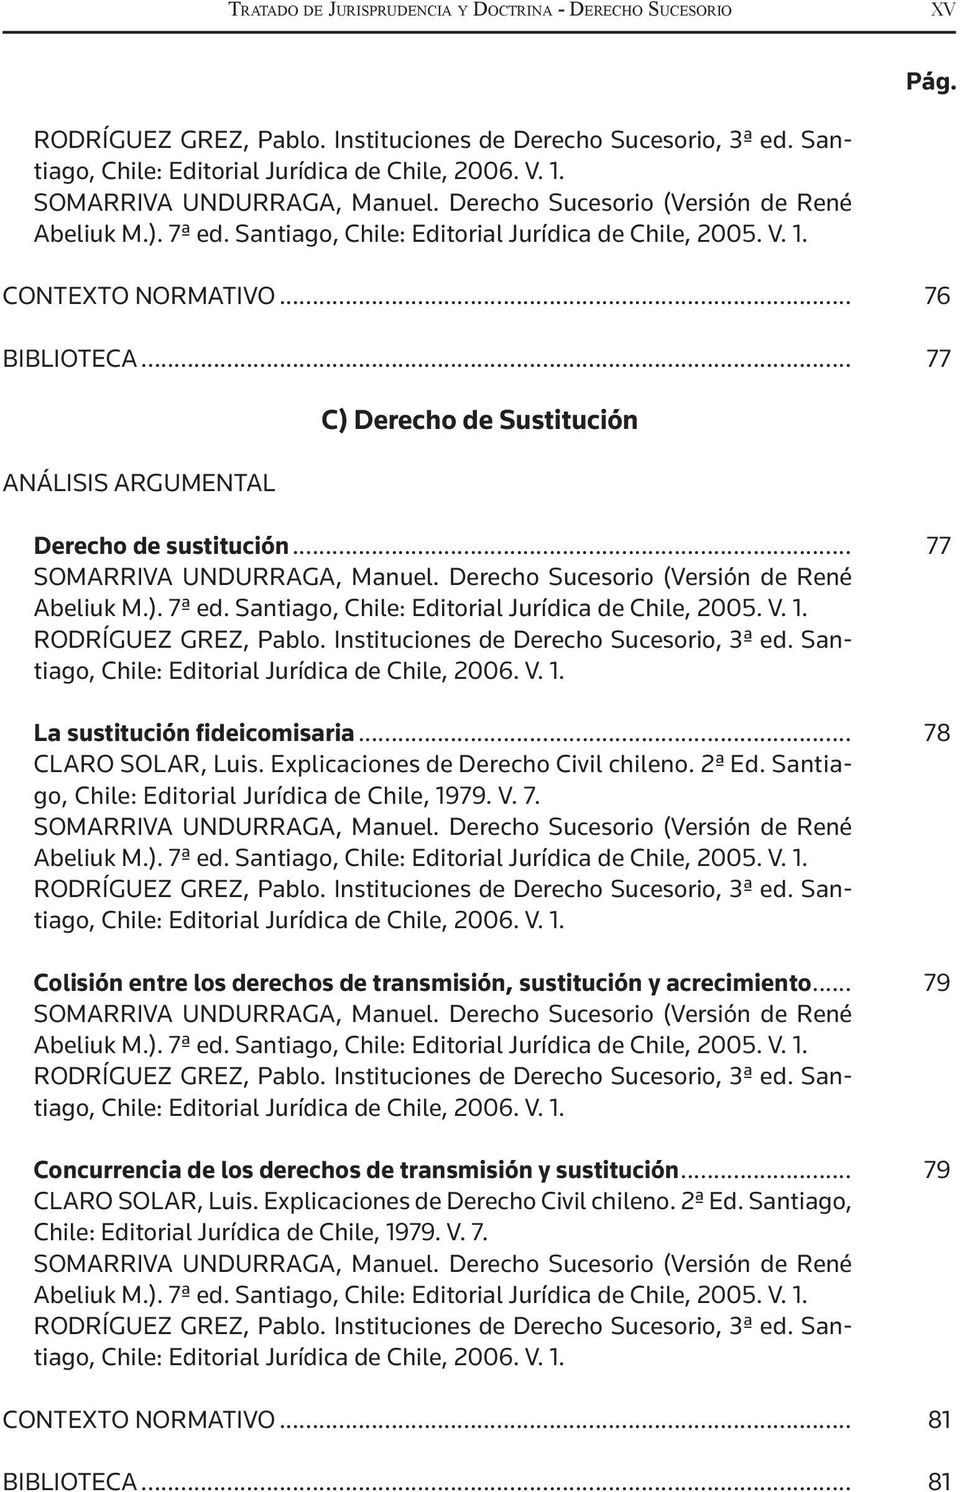 Explicaciones de Derecho Civil chileno. 2ª Ed. Santiago, Chile: Editorial Jurídica de Chile, 1979. V. 7.